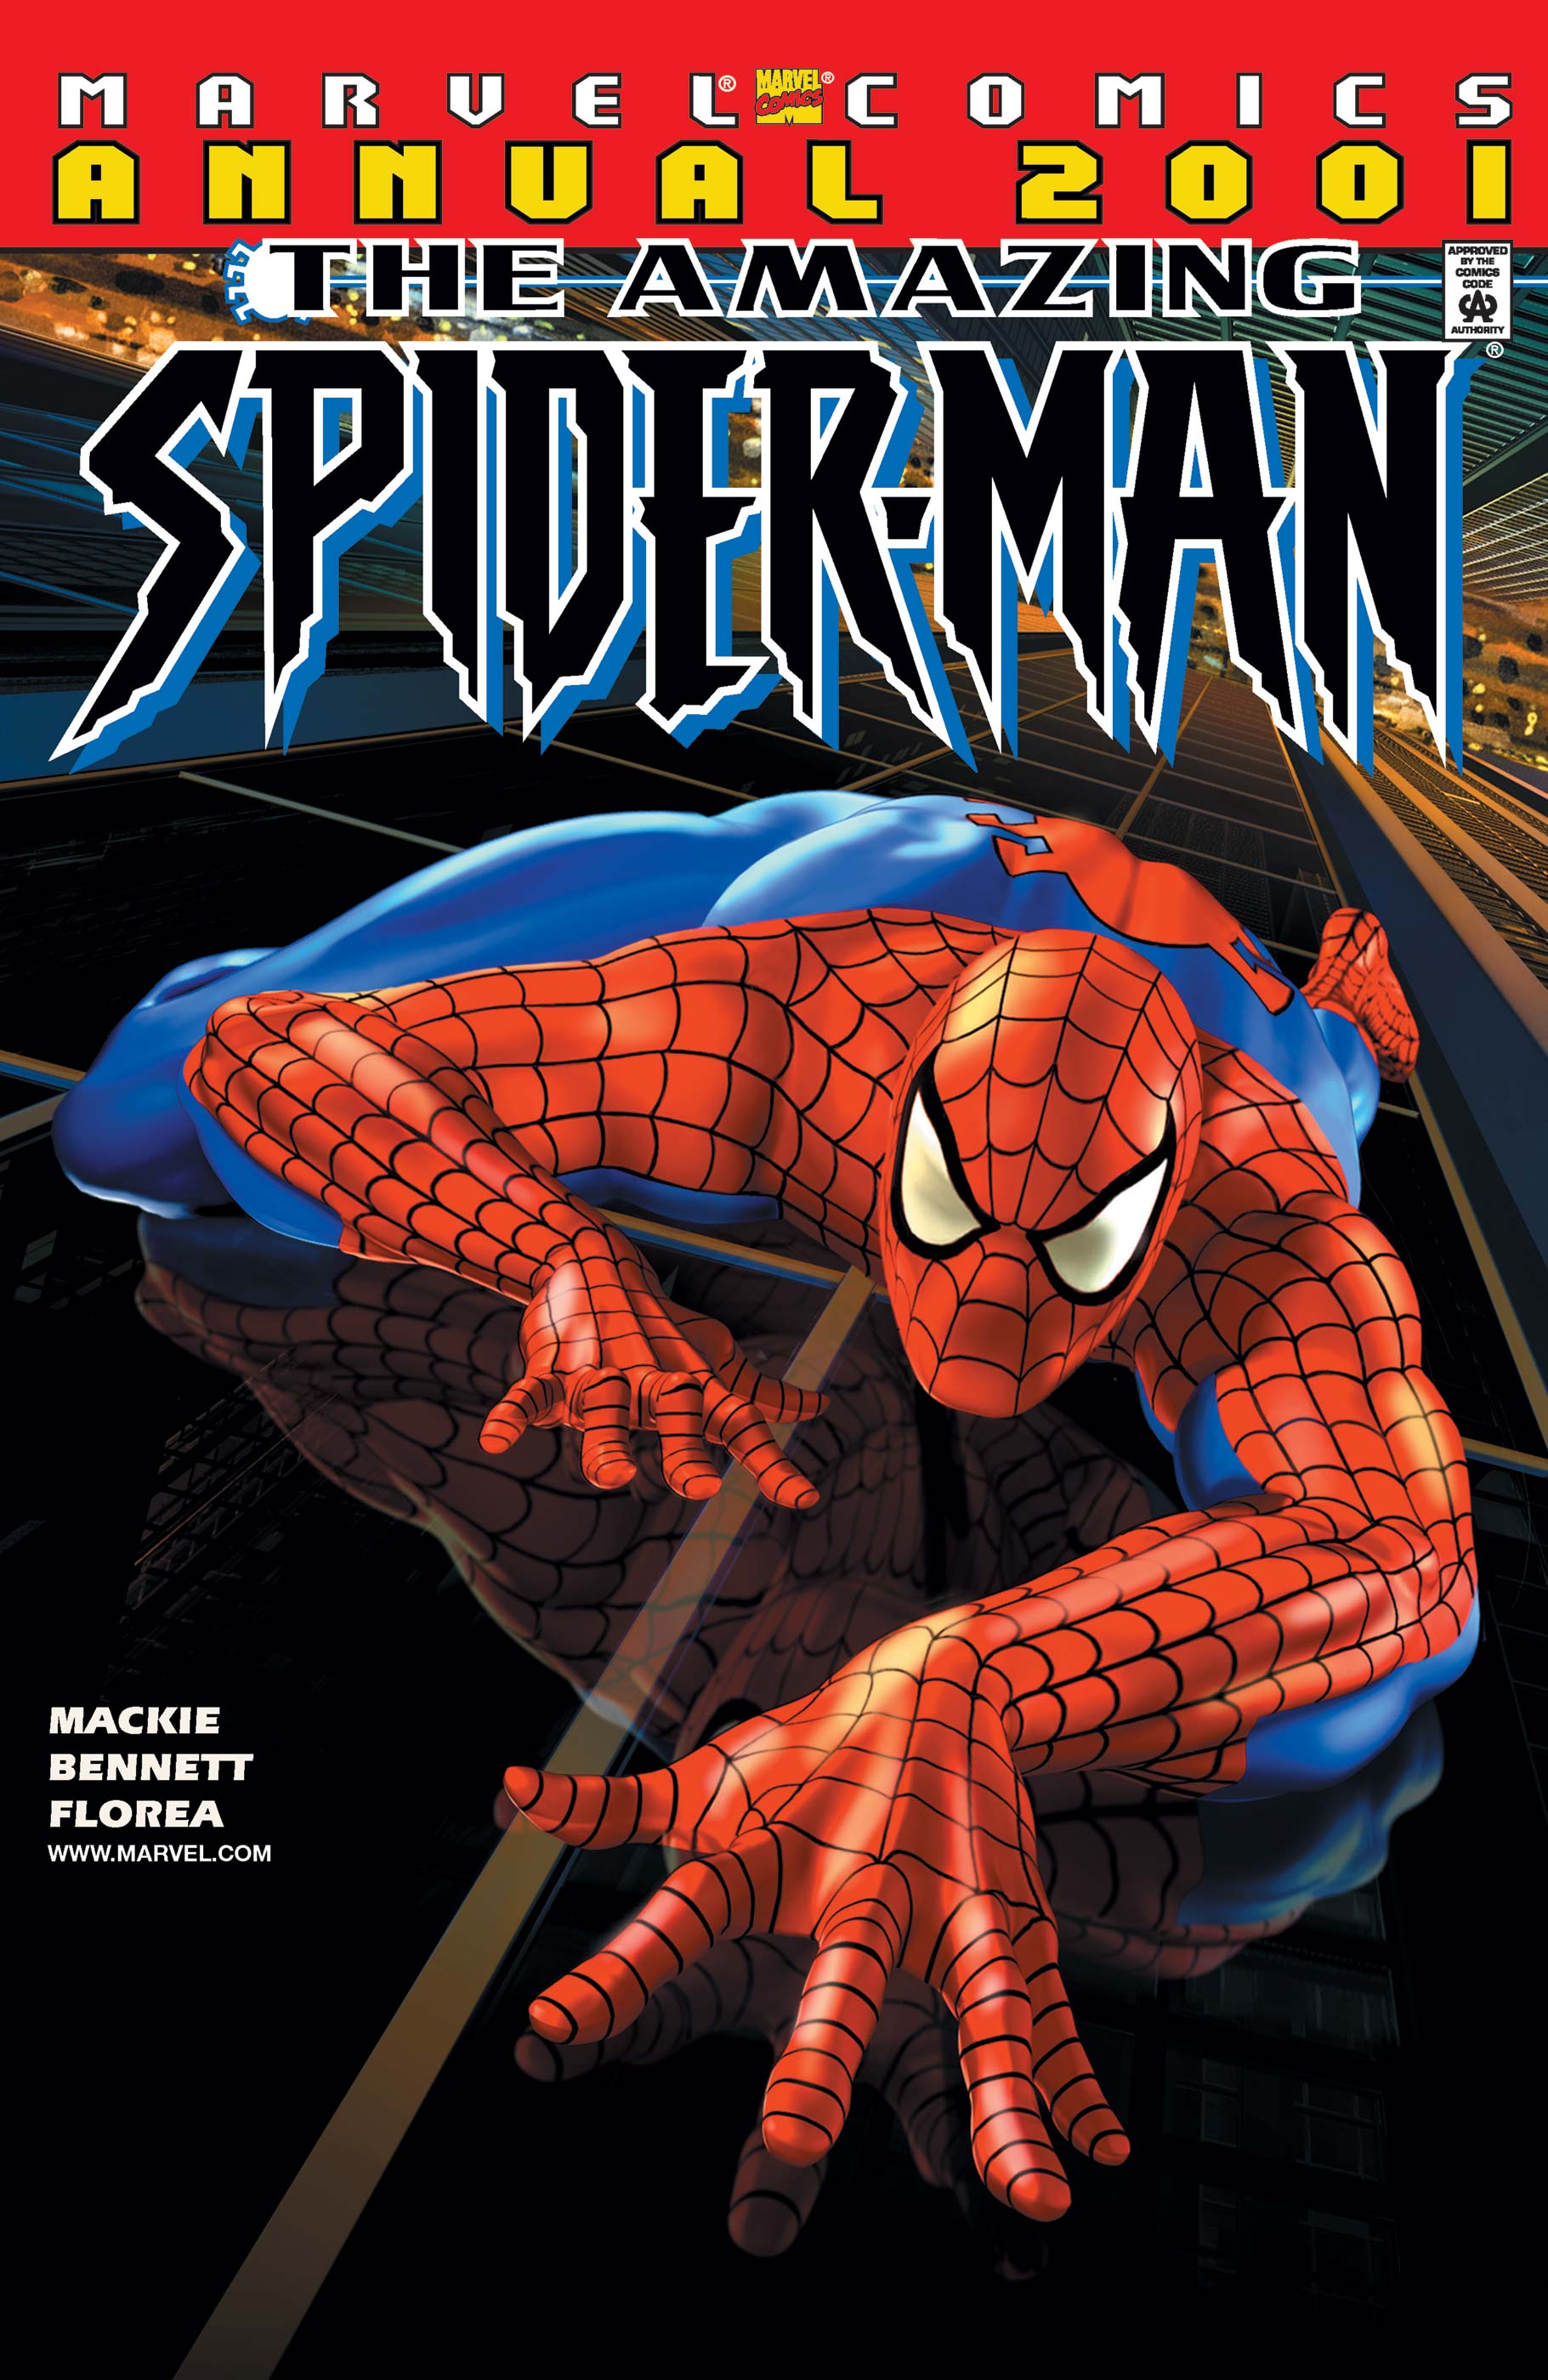 Amazing Spider-Man Annual (2001) #1